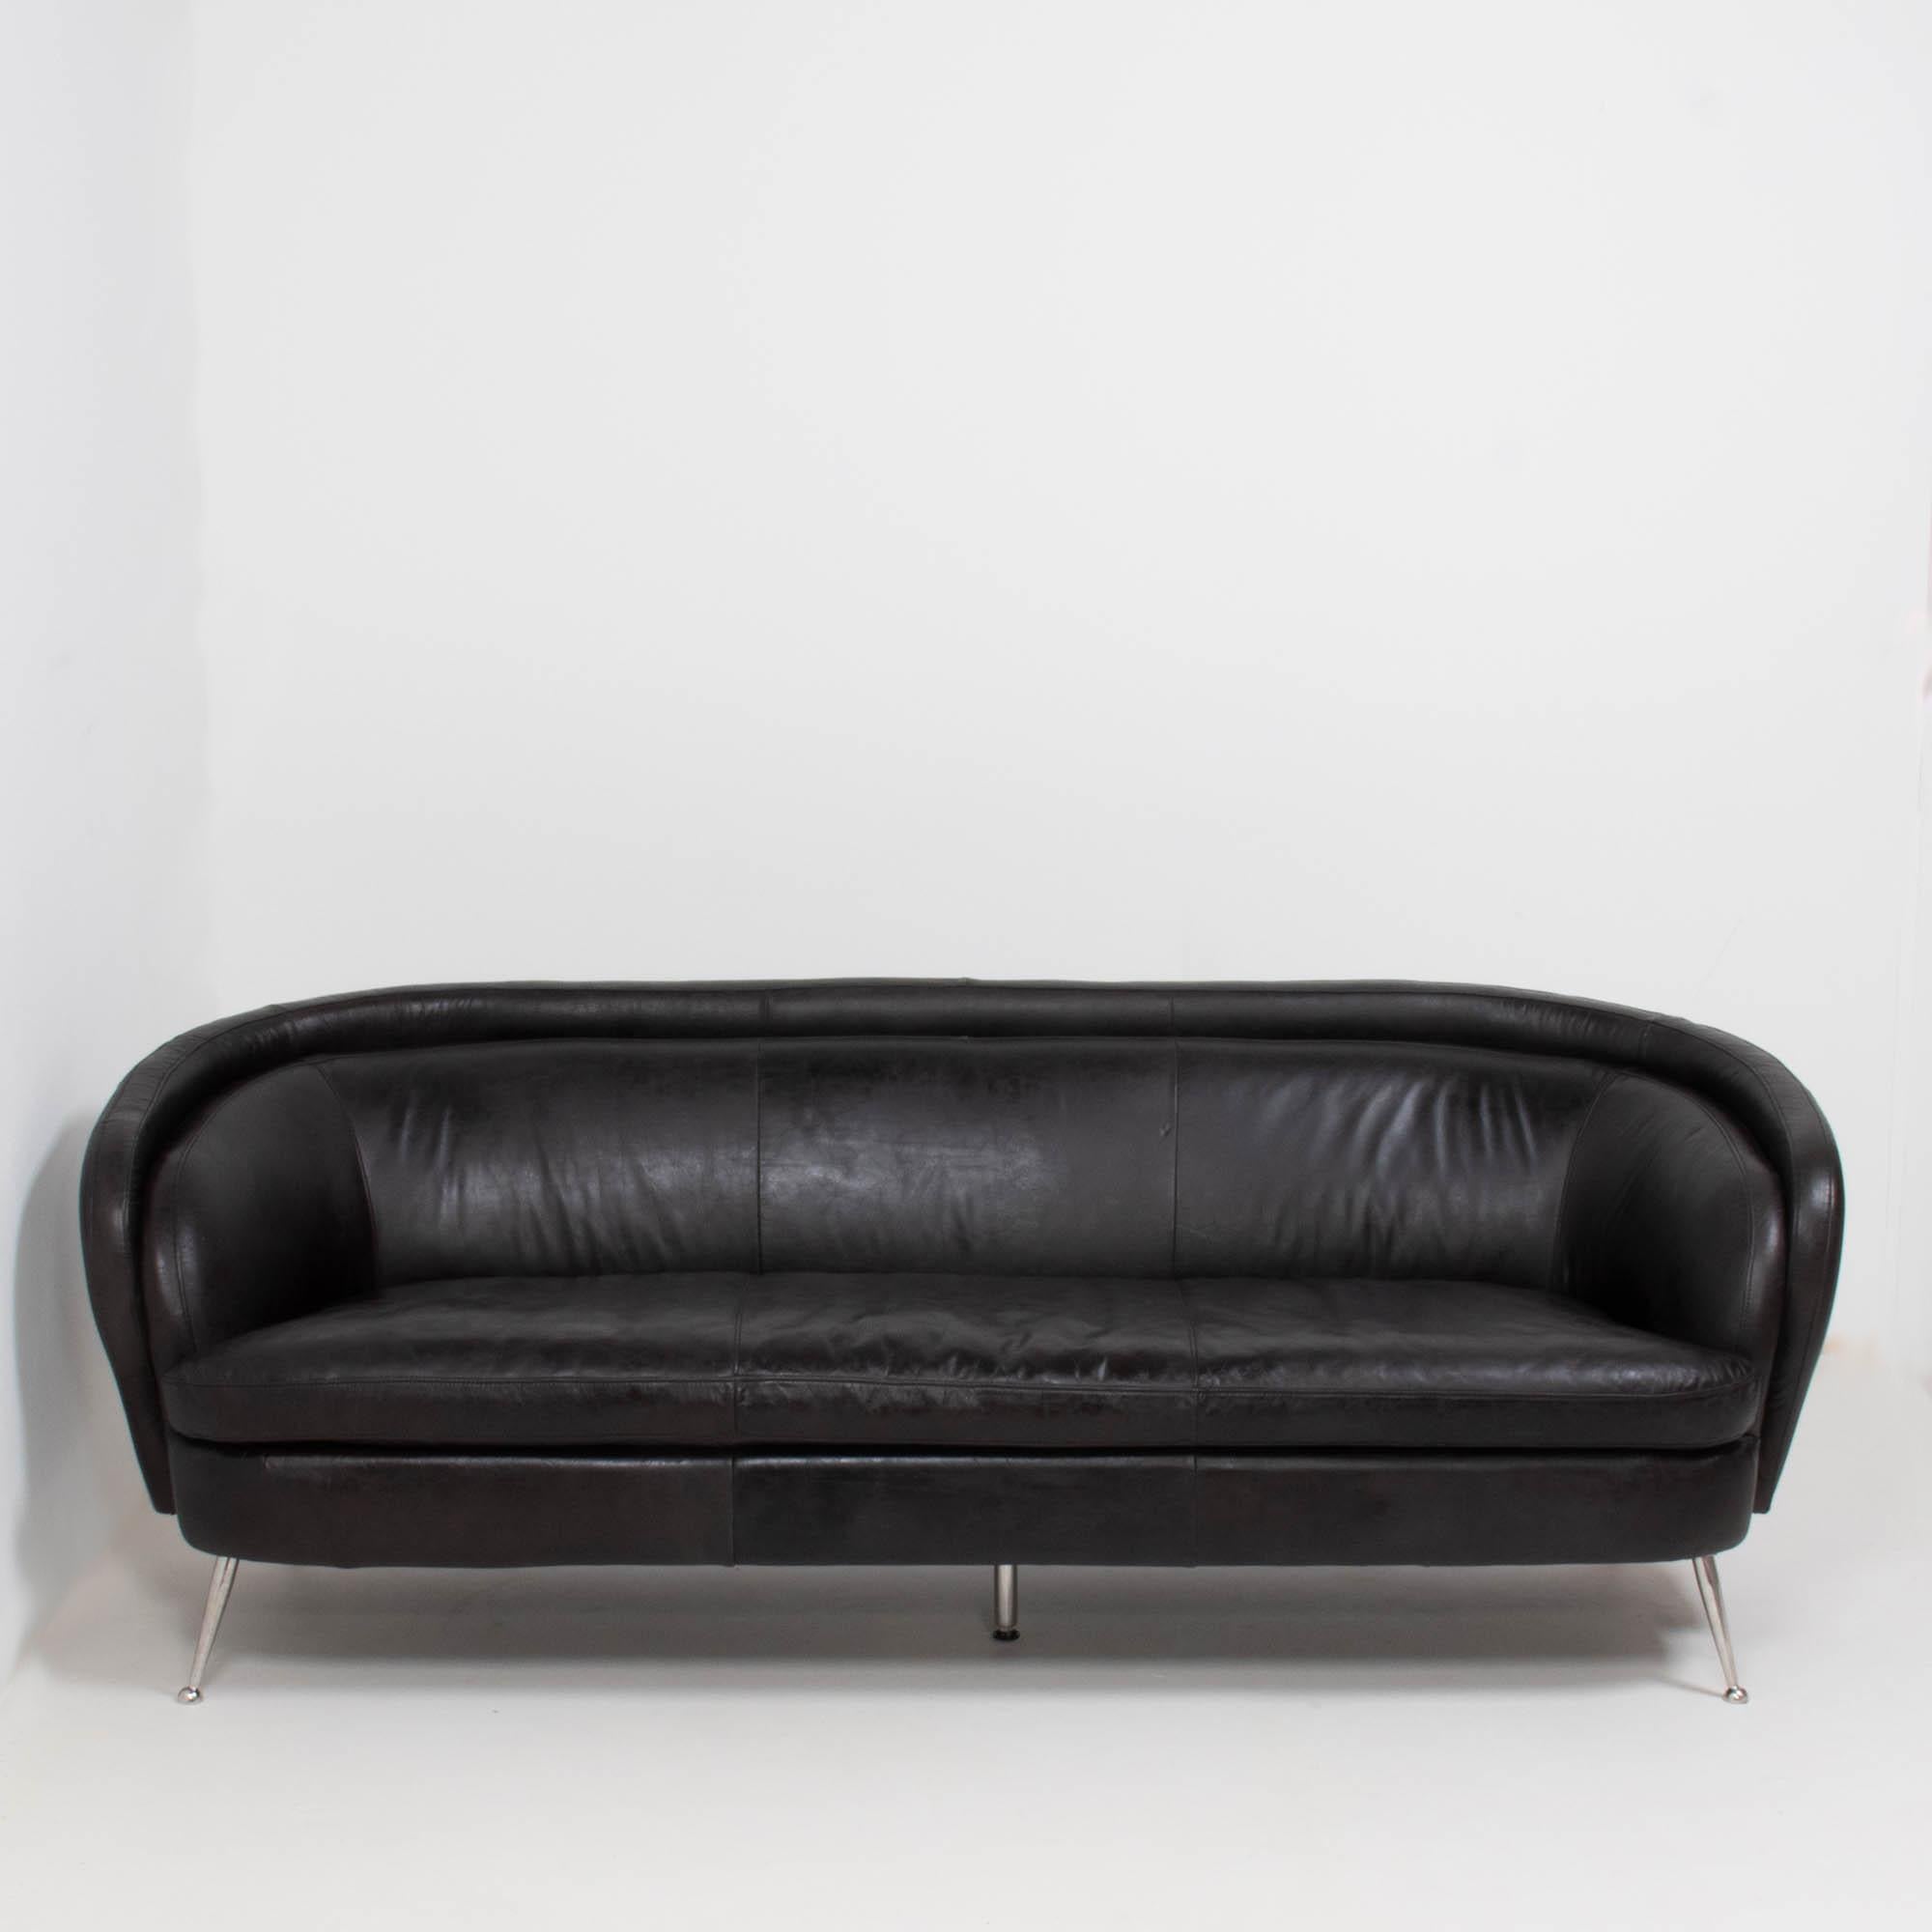 Dieses wunderschön geschwungene Vintage-Sofa aus den 1960er Jahren ist mit schwarzem Leder bezogen und steht auf verchromten Stiletto-Beinen mit einer zusätzlichen zentralen Stütze.

Die Rückenlehne des Sofas ist geschwungen und schafft eine